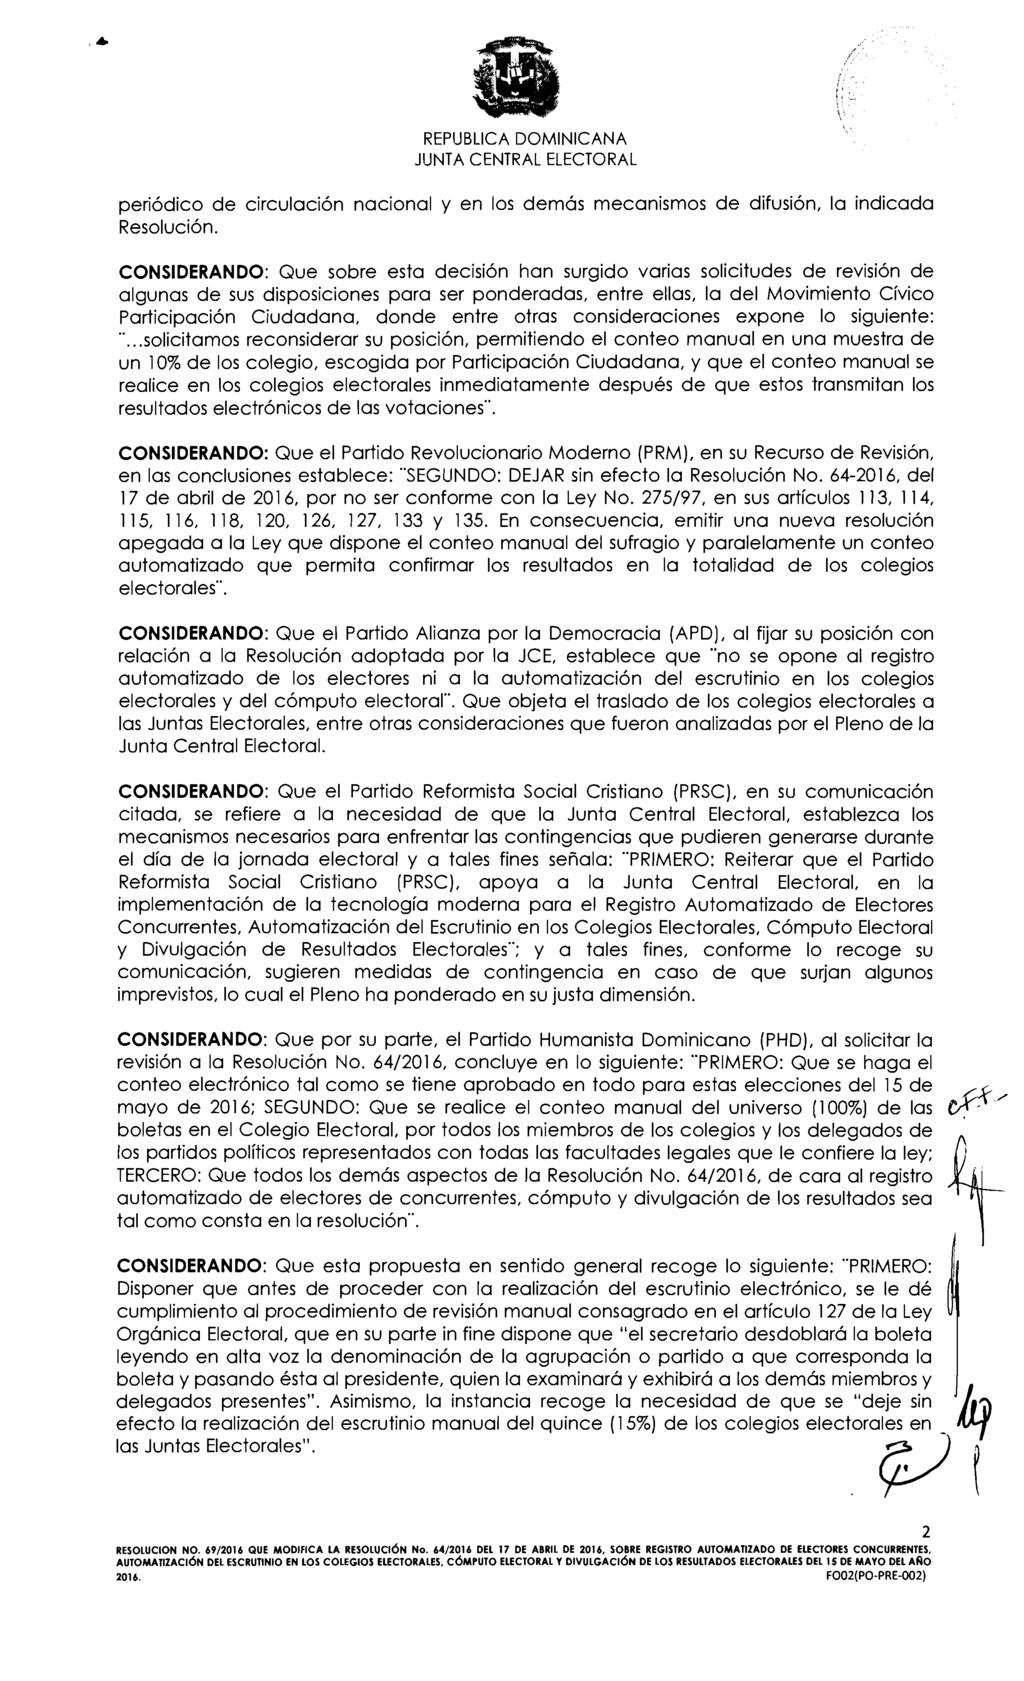 S \ REPUBI-ICA DOMINICANA periódico de circulación nacional y en los demás mecanismos de difusión, la indicada Resolución.